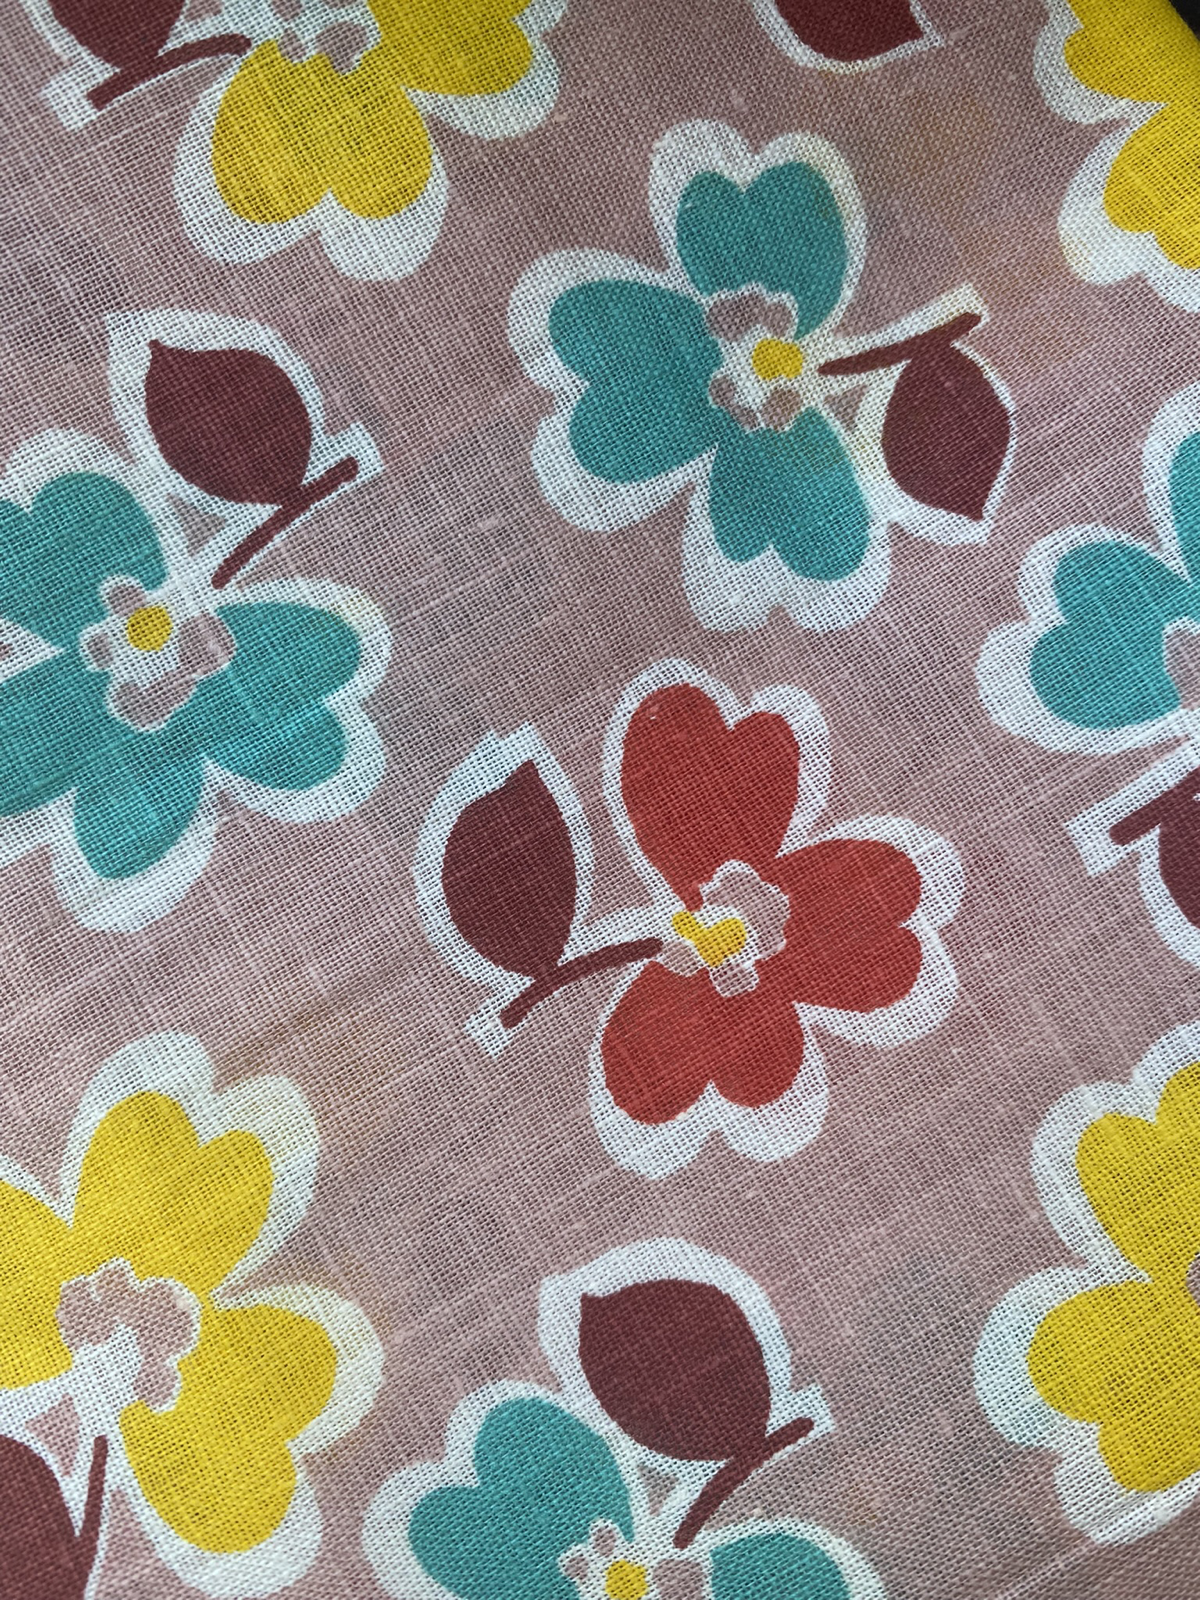 1930s - 1940s Tan Multi-color Floral Cotton